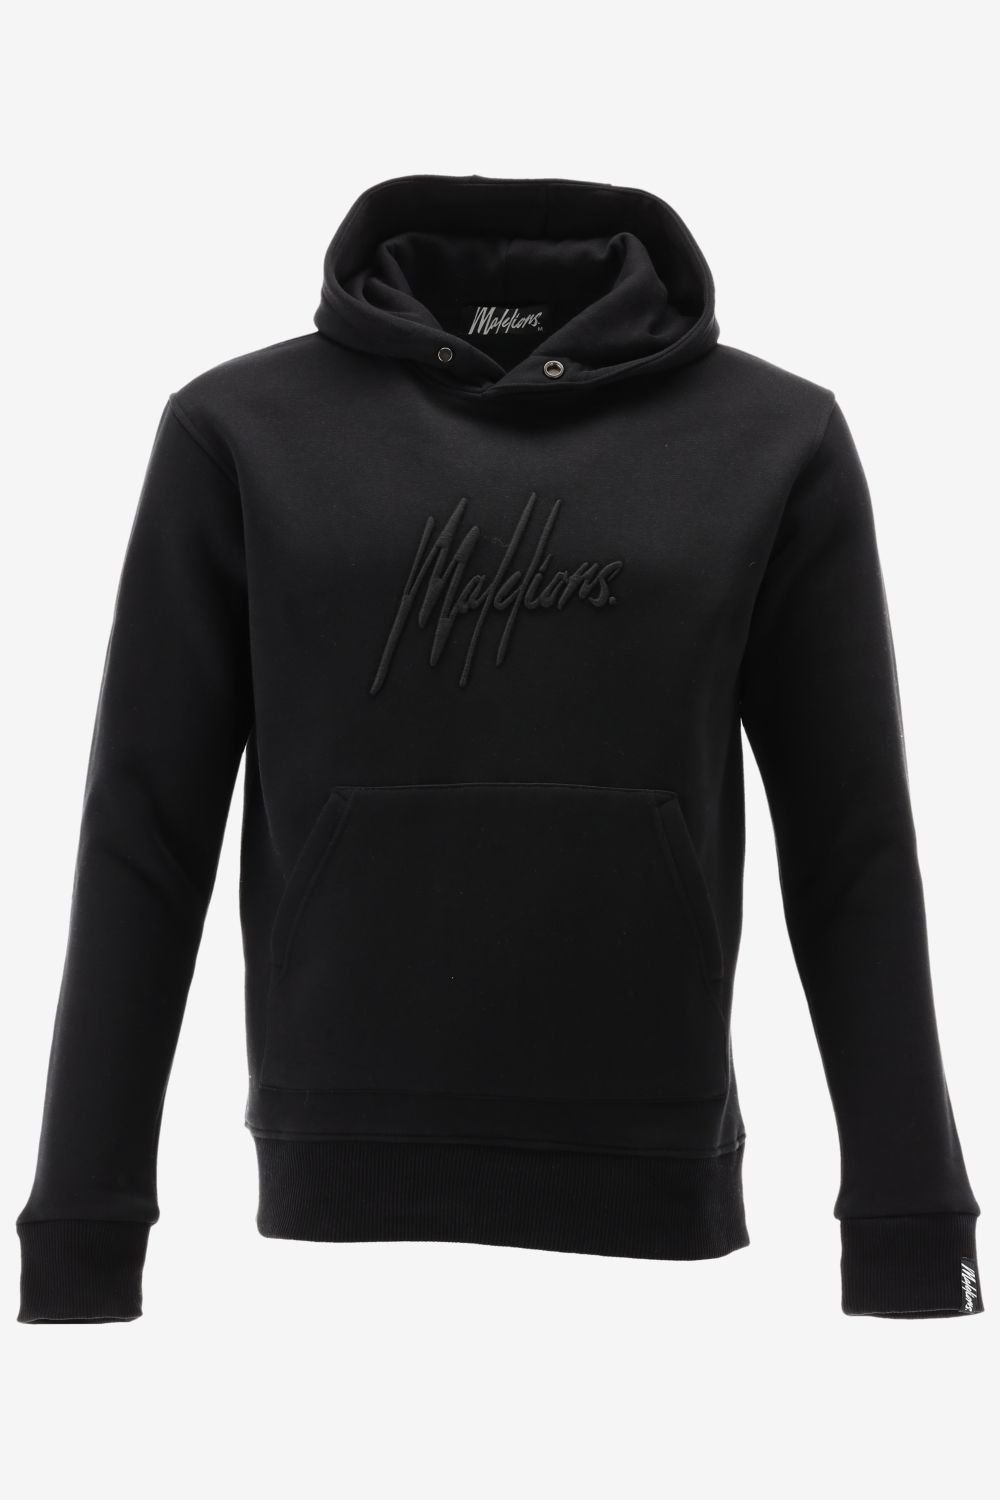 Malelions hoodie essentials hoodie maat XL